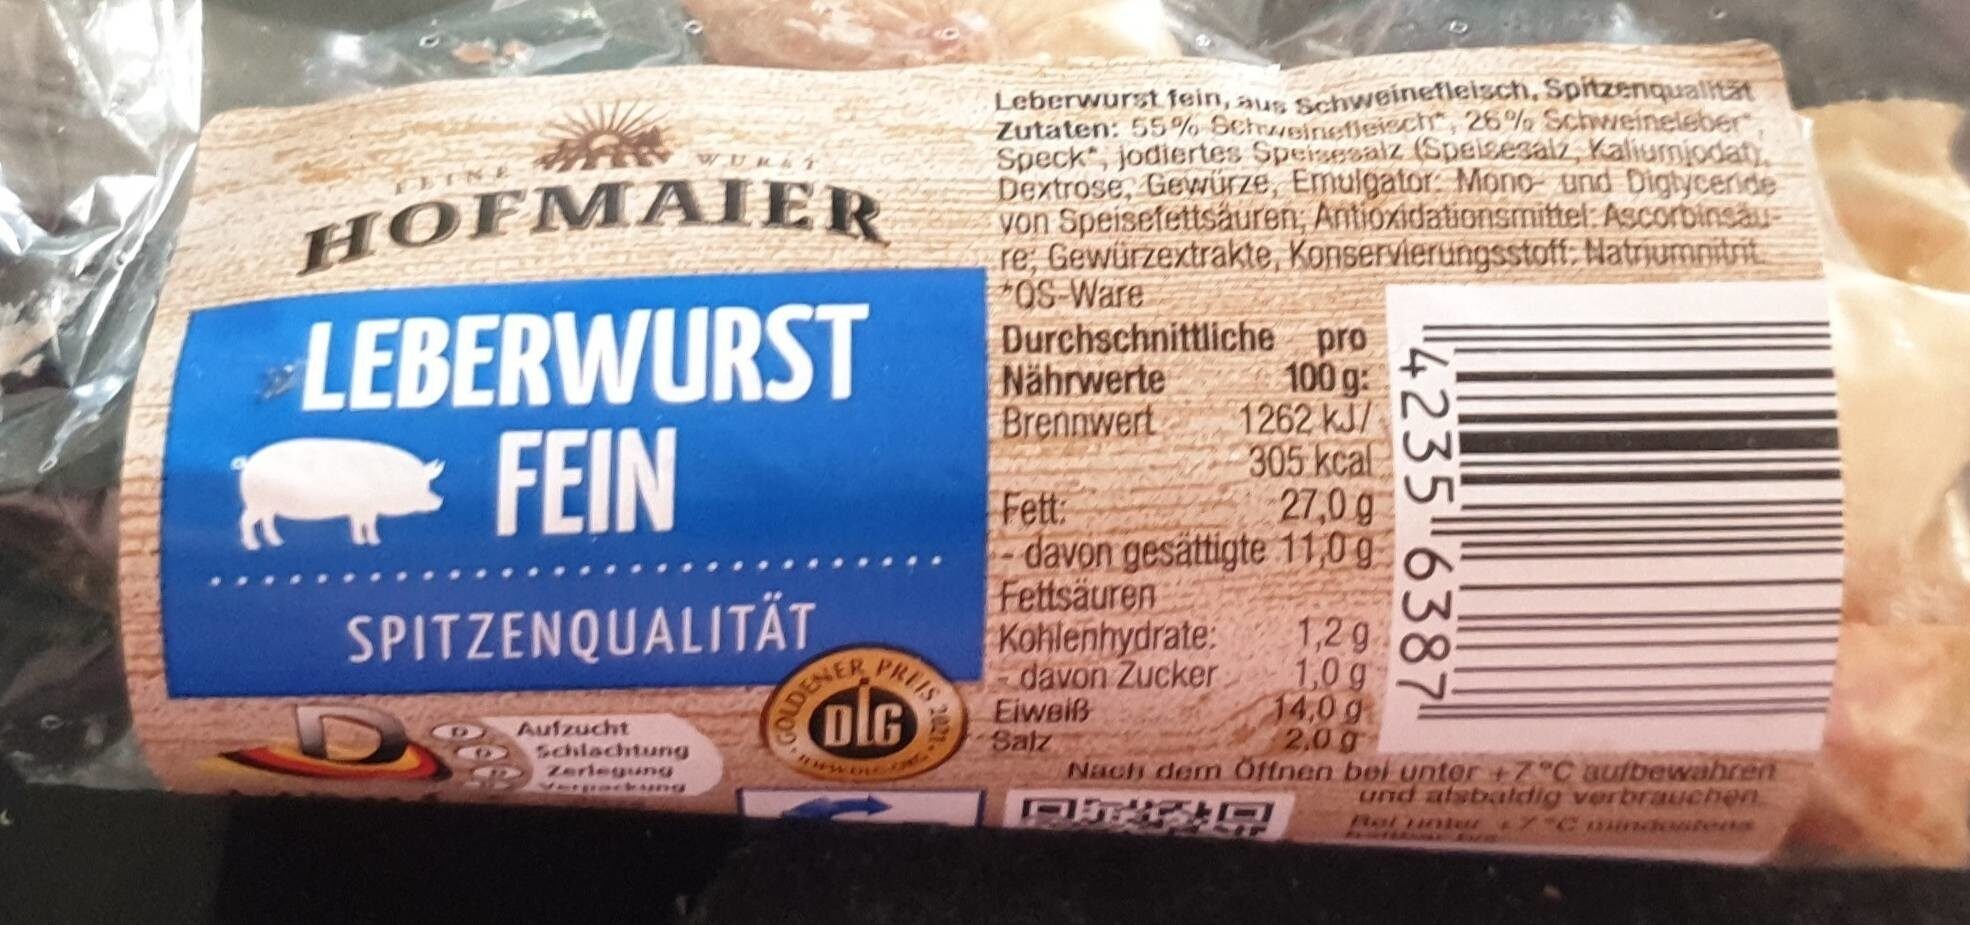 Leberwurst fein - Produkt